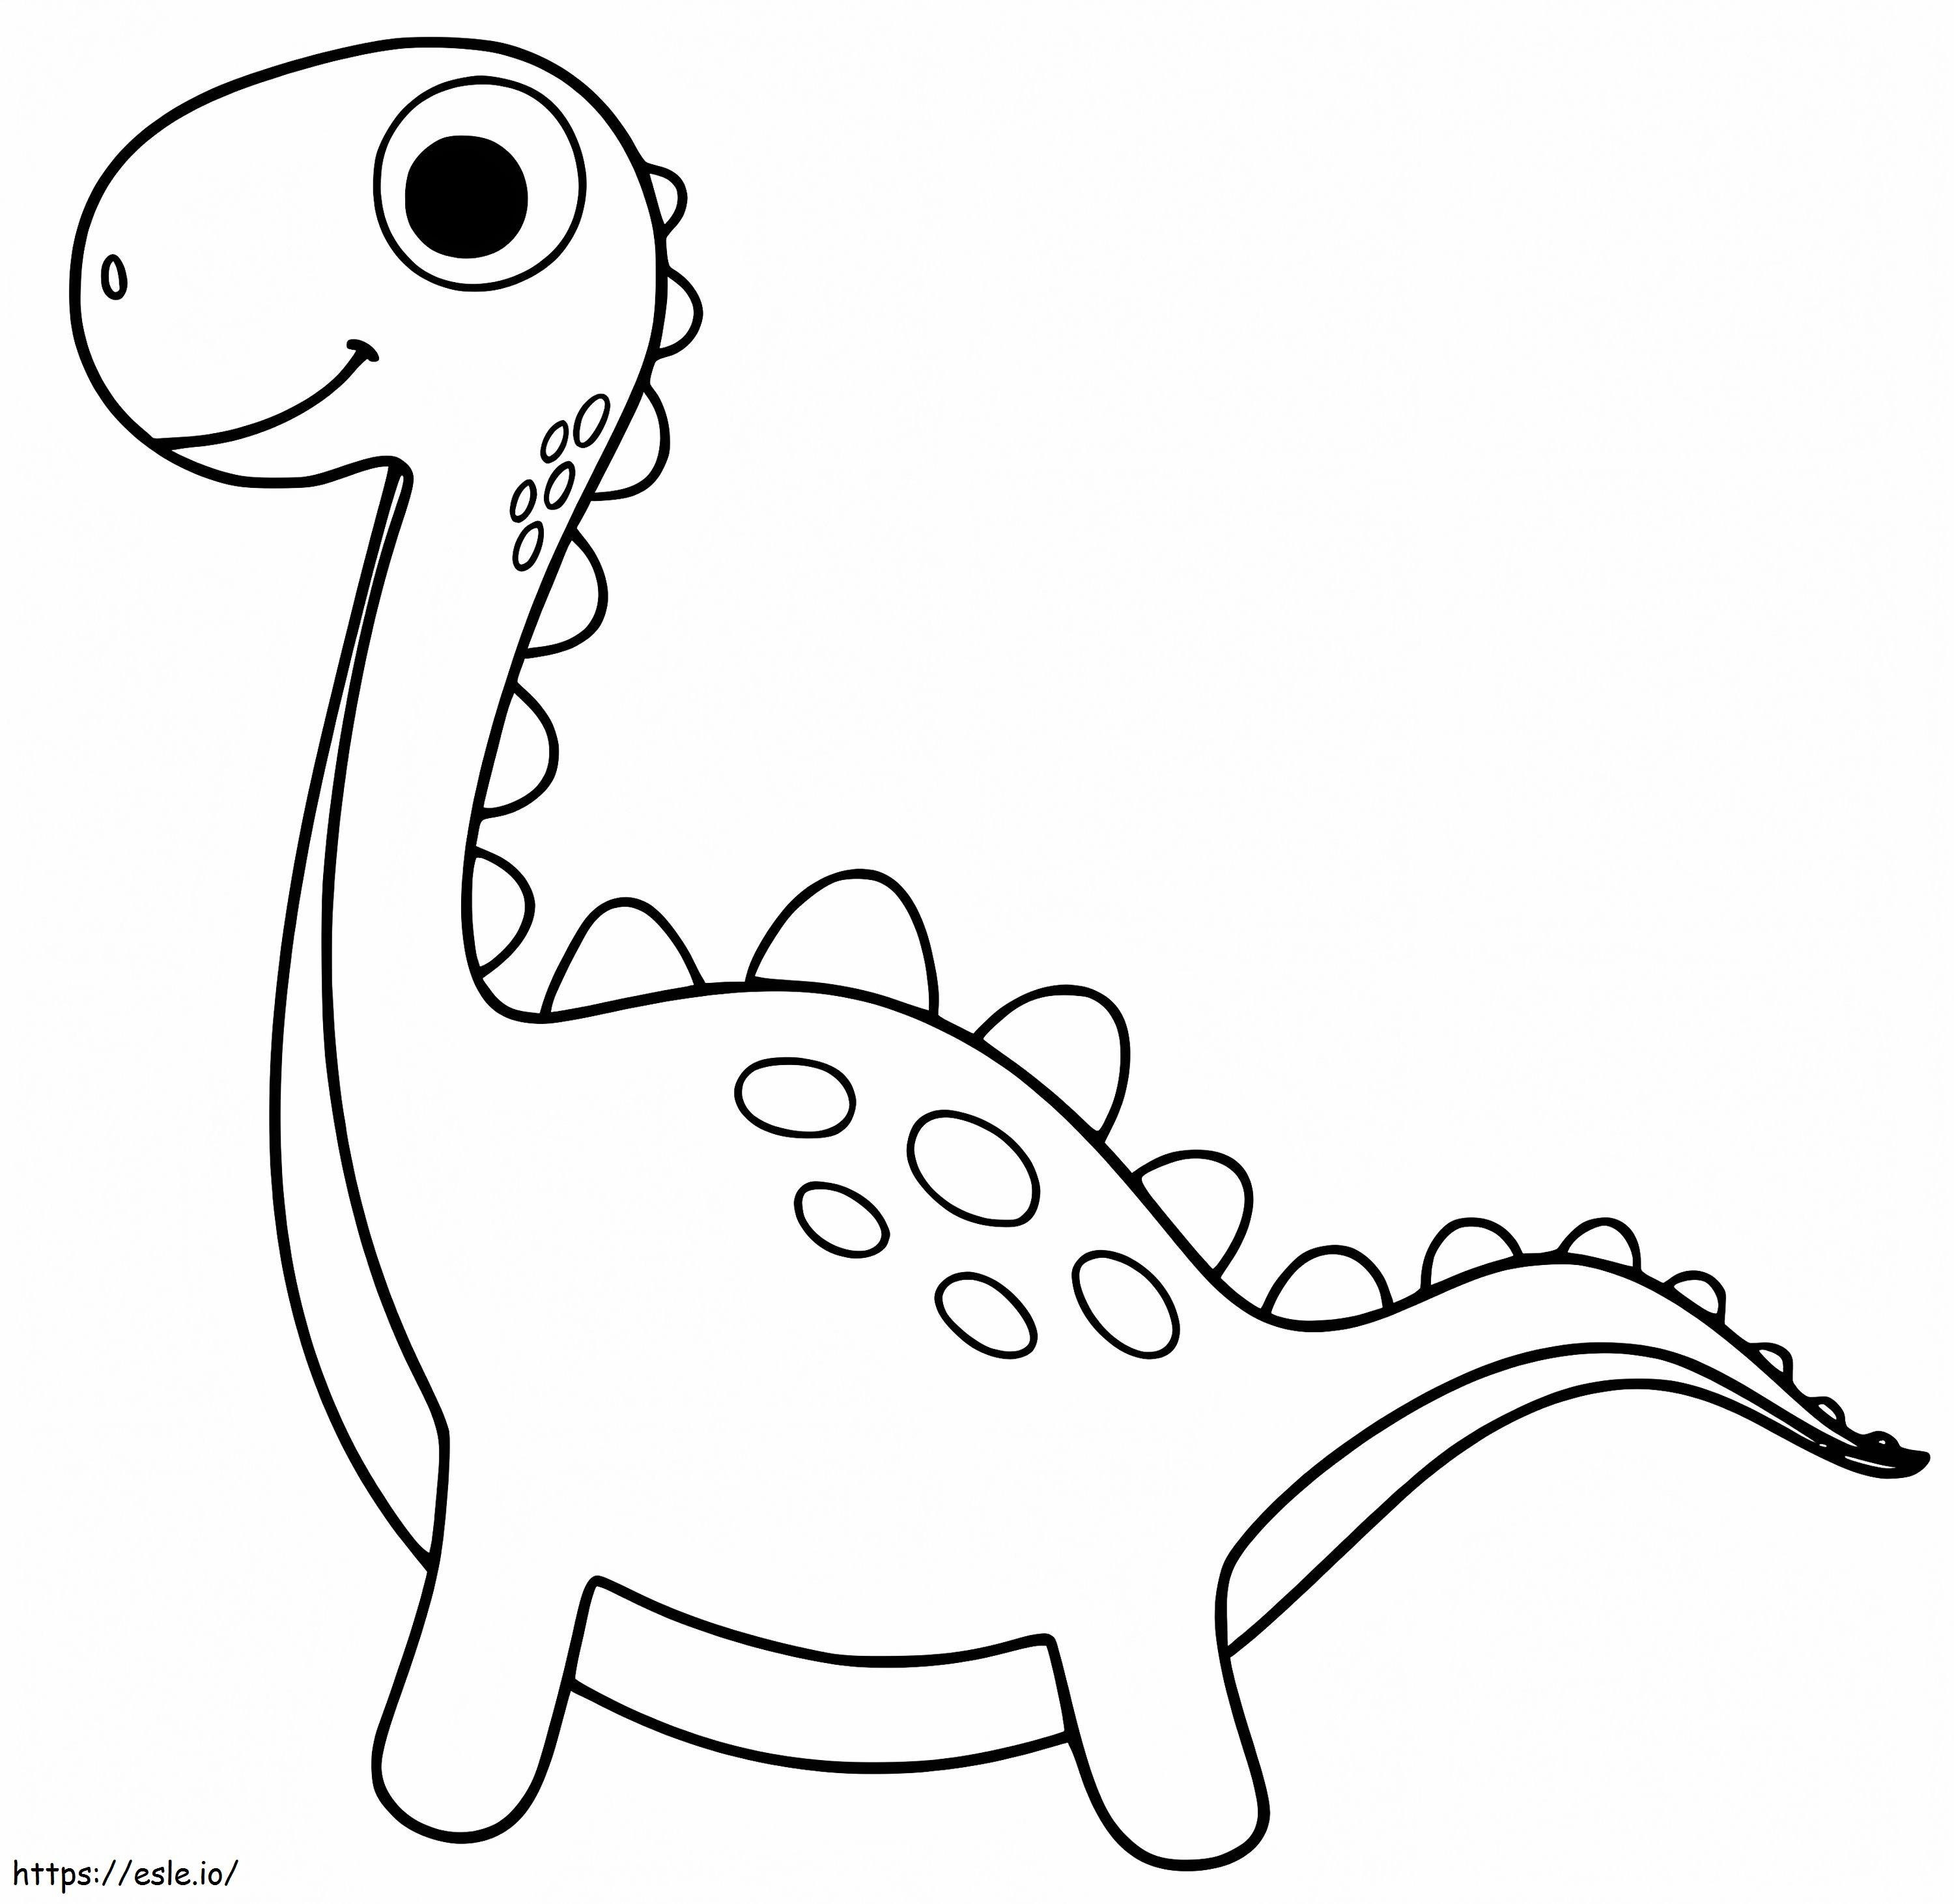 Einfacher Dinosaurier ausmalbilder